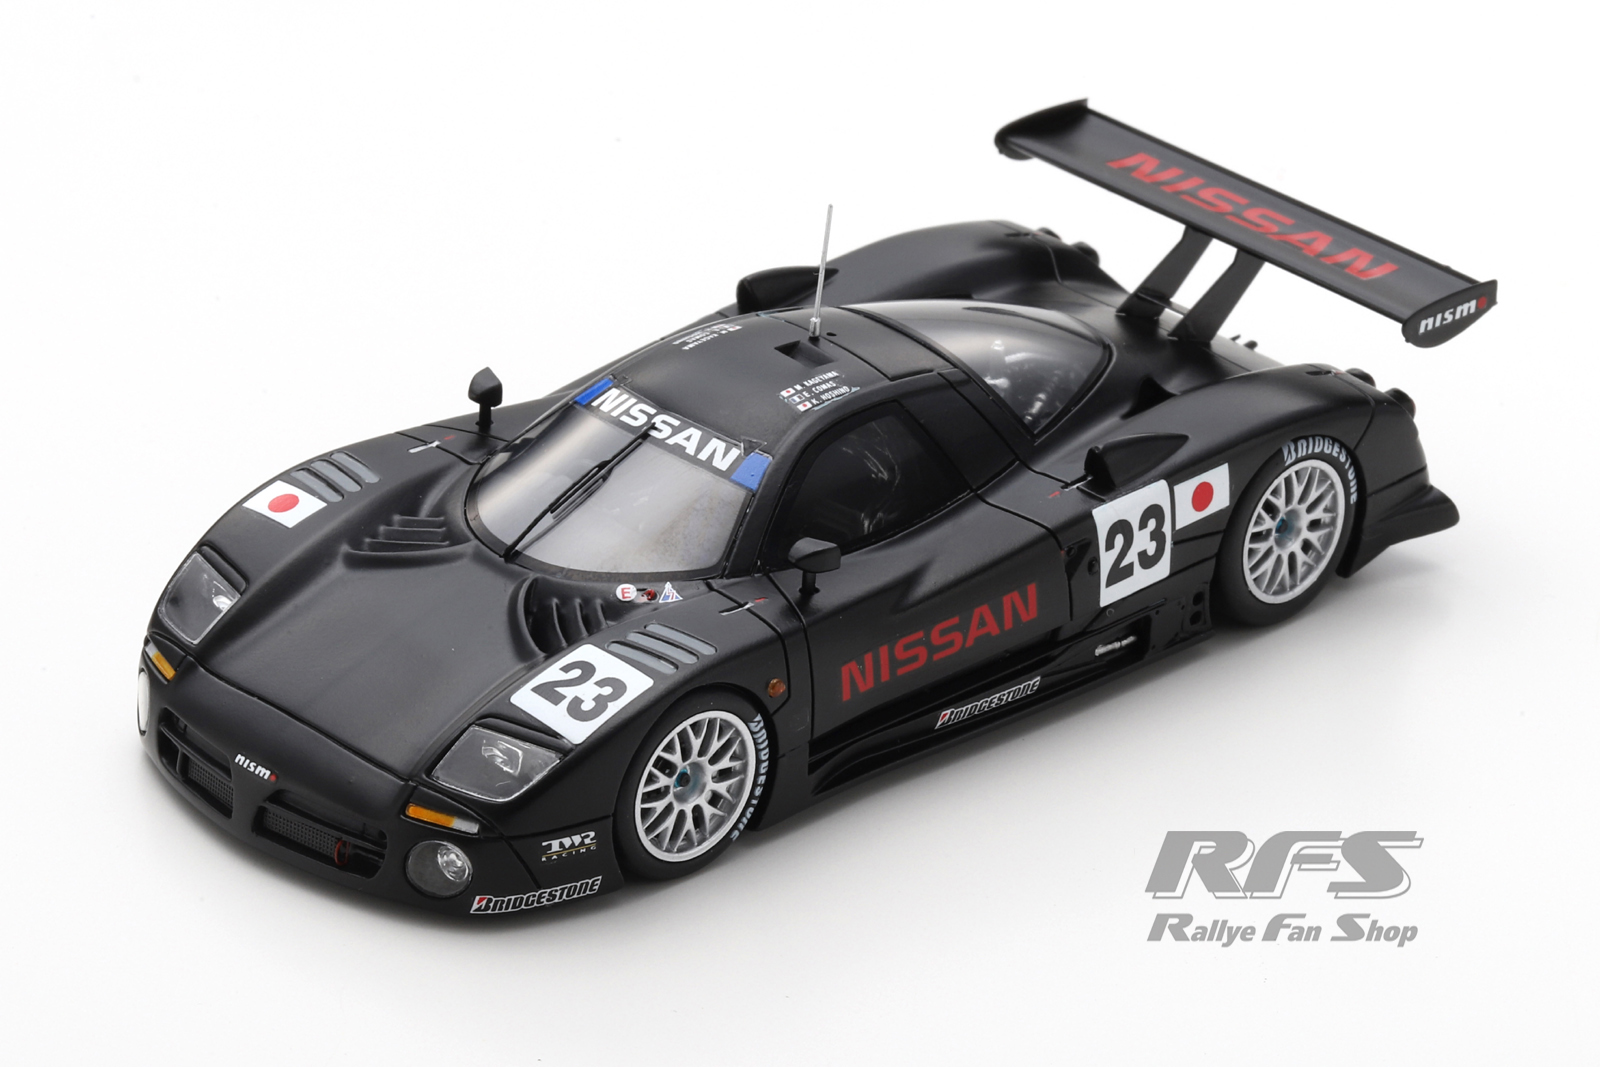 Nissan R390 GT1 - Qualification 24h Le Mans 1997